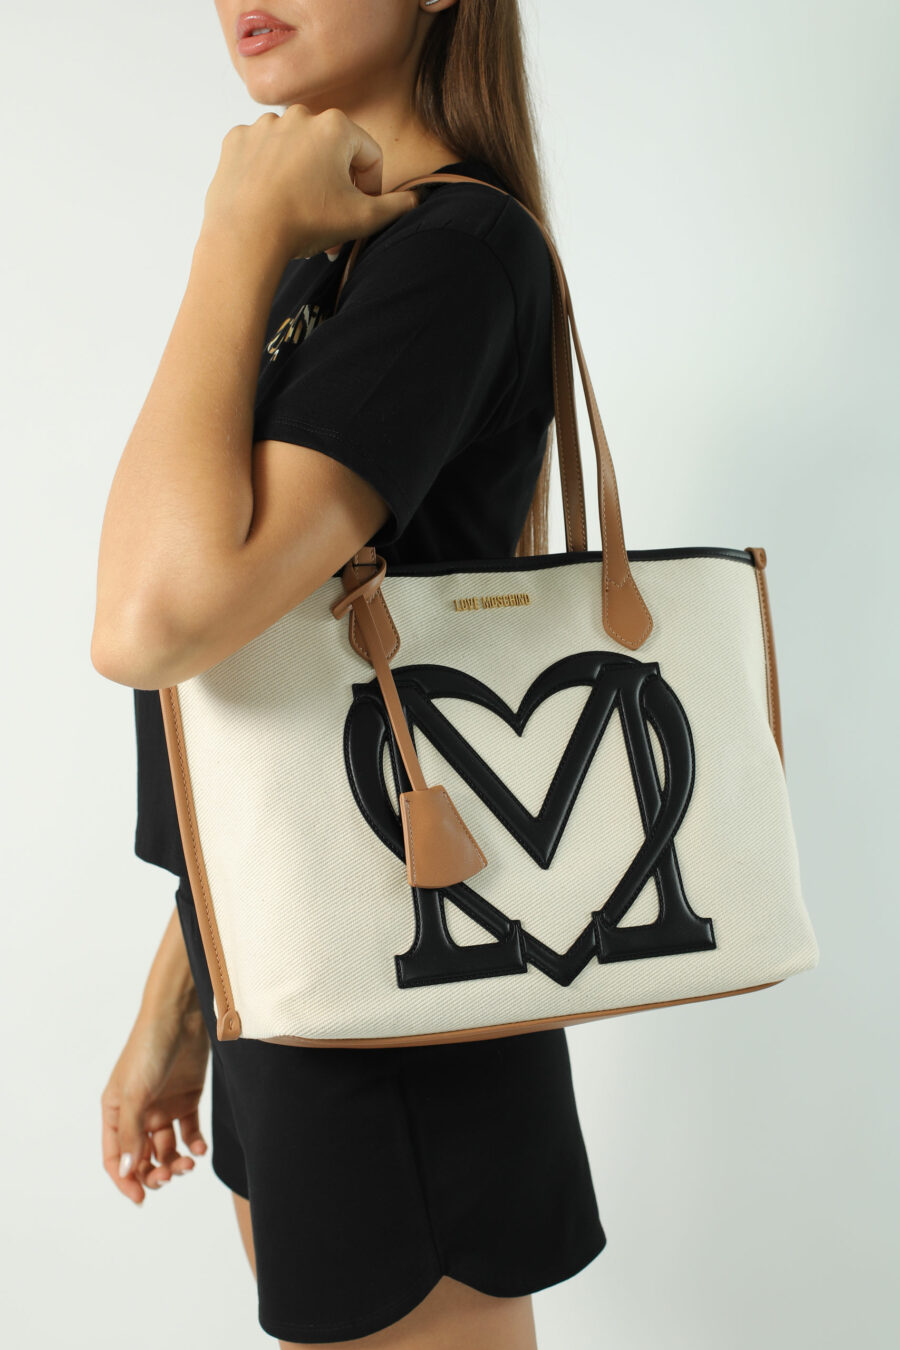 White shopper bag with black heart maxilogo - Photos 2382